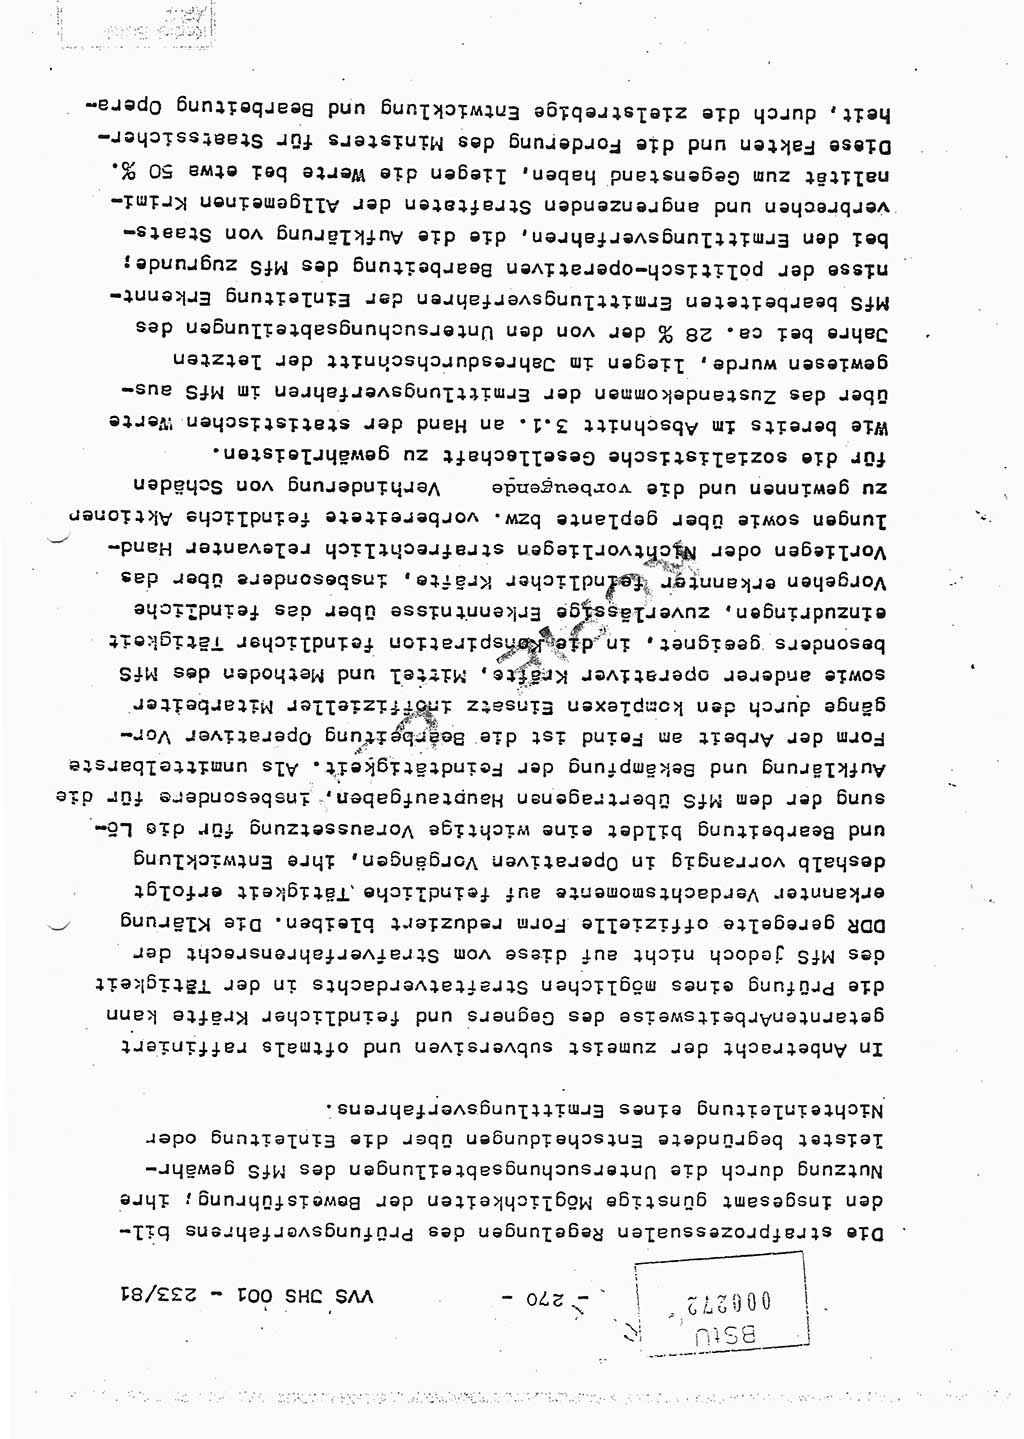 Dissertation Oberstleutnant Horst Zank (JHS), Oberstleutnant Dr. Karl-Heinz Knoblauch (JHS), Oberstleutnant Gustav-Adolf Kowalewski (HA Ⅸ), Oberstleutnant Wolfgang Plötner (HA Ⅸ), Ministerium für Staatssicherheit (MfS) [Deutsche Demokratische Republik (DDR)], Juristische Hochschule (JHS), Vertrauliche Verschlußsache (VVS) o001-233/81, Potsdam 1981, Blatt 270 (Diss. MfS DDR JHS VVS o001-233/81 1981, Bl. 270)